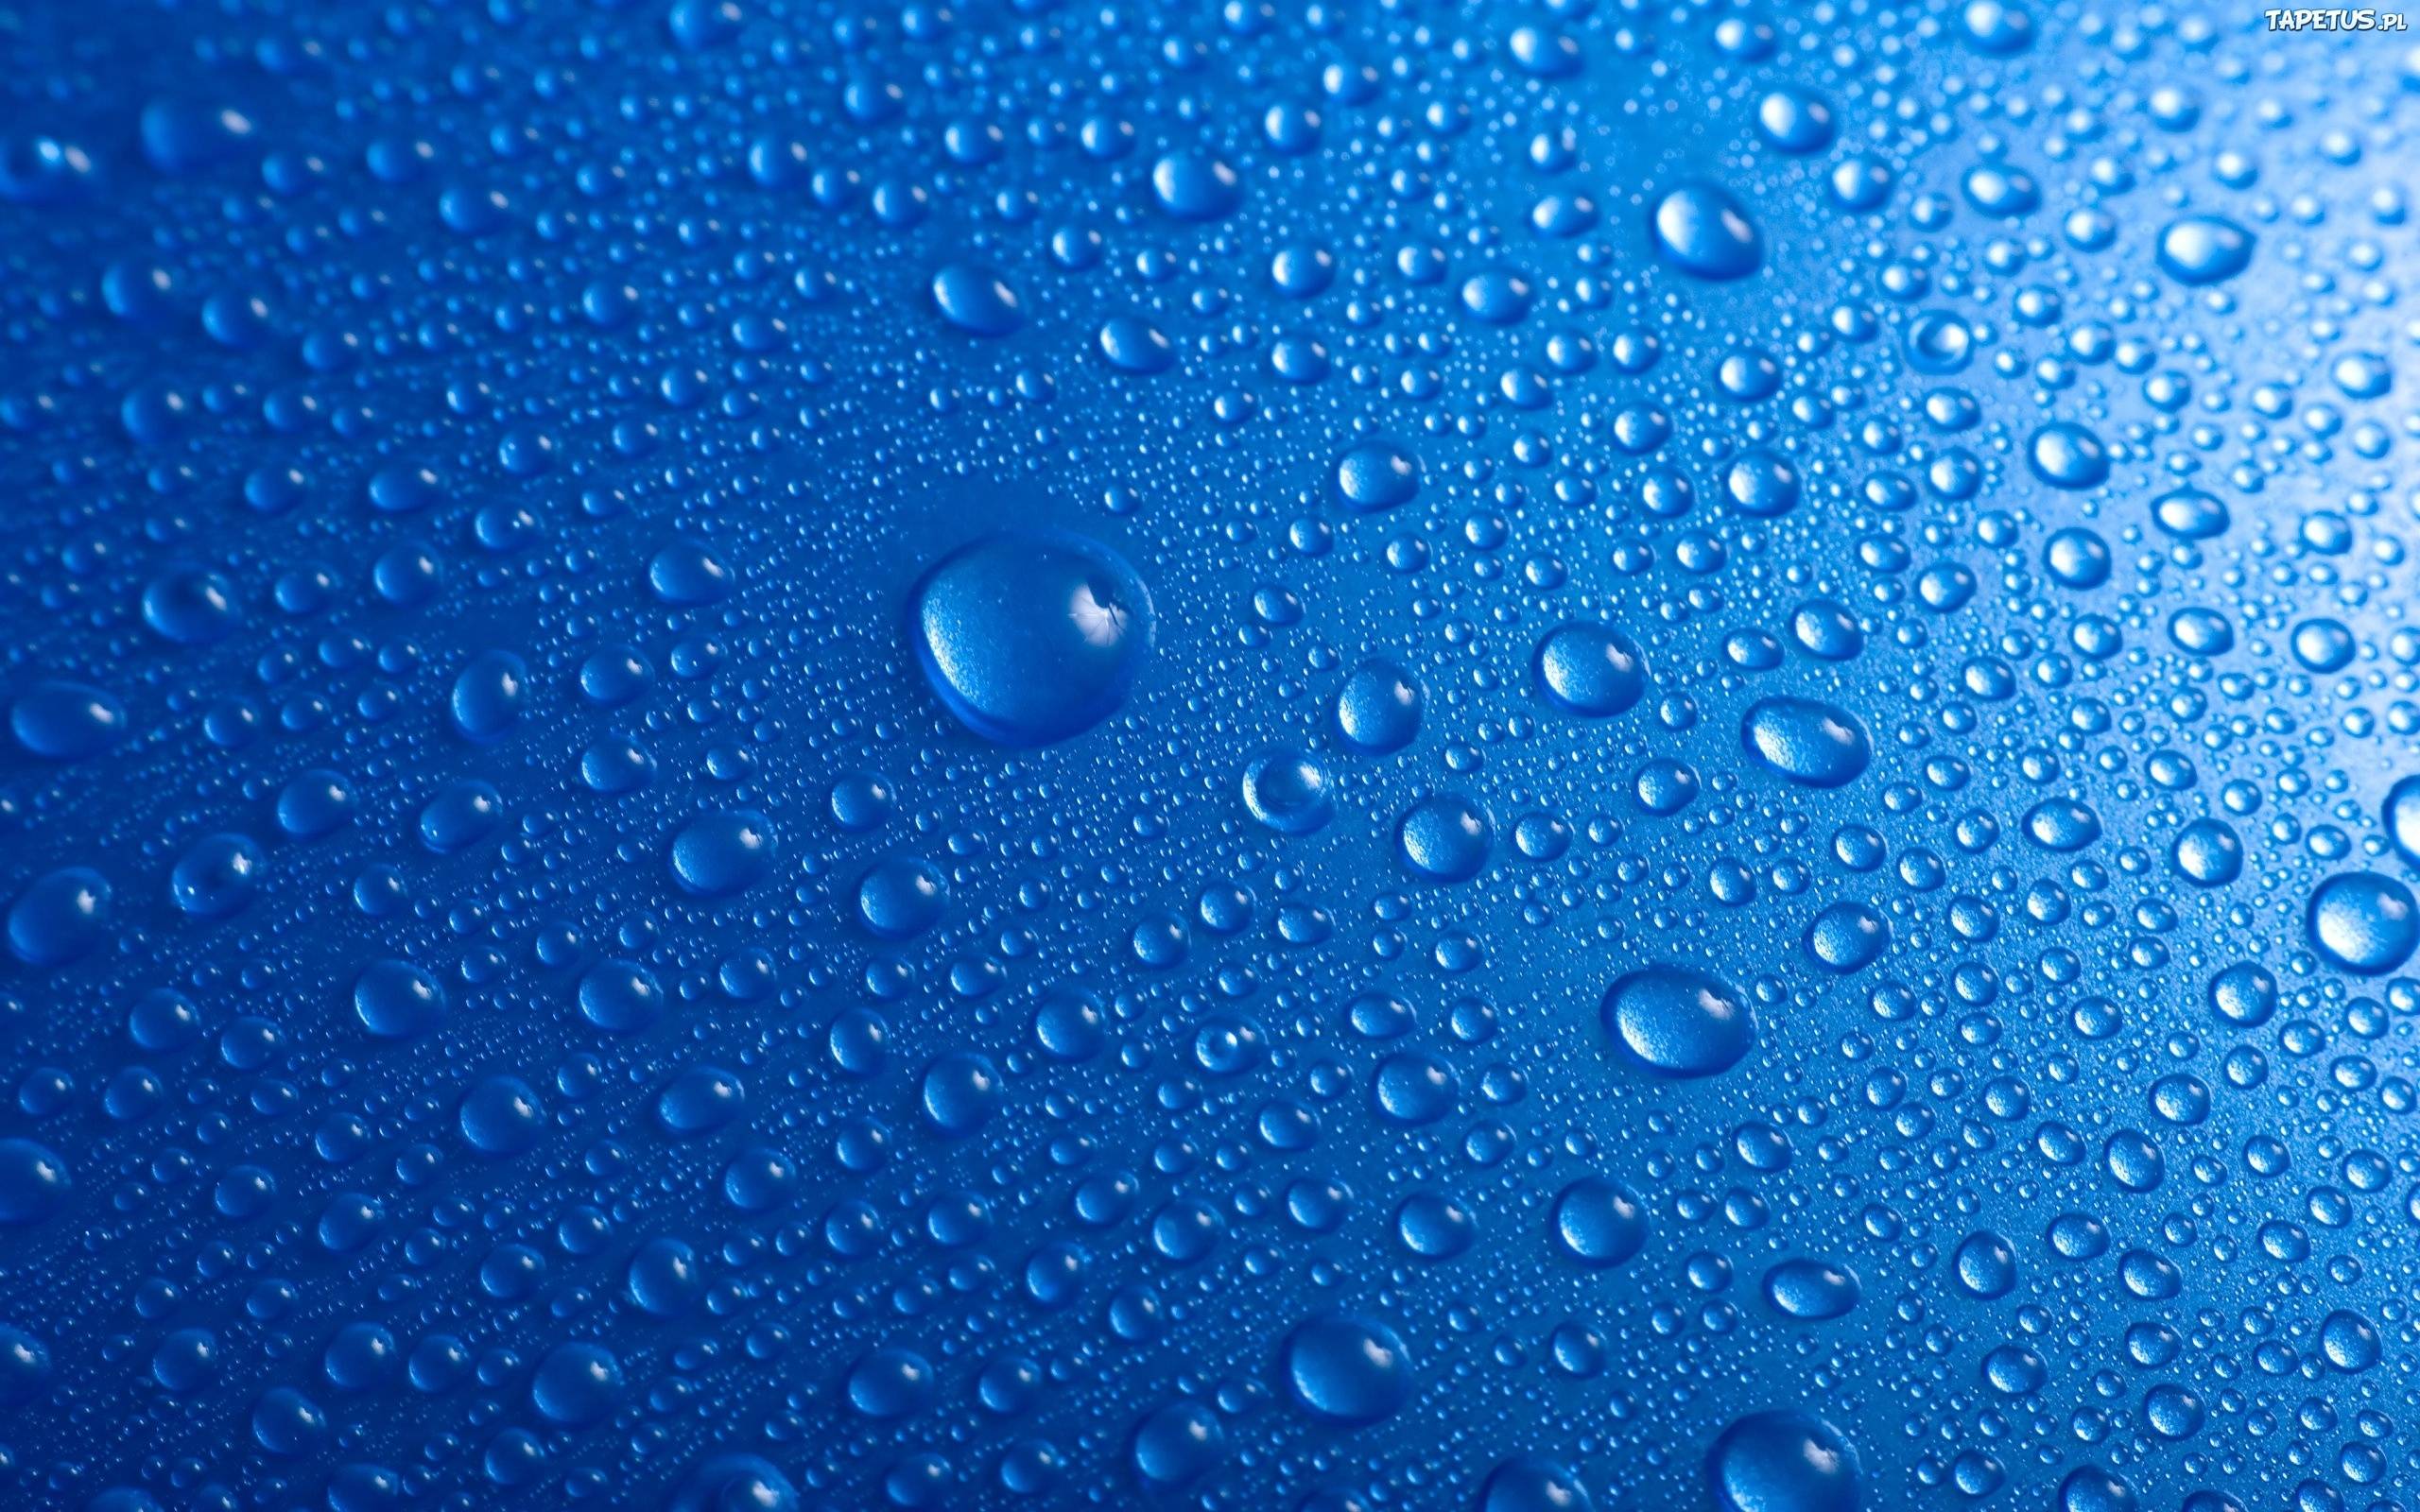 Решить вододефицит новым методом сбора воды «из воздуха» намерены ученые